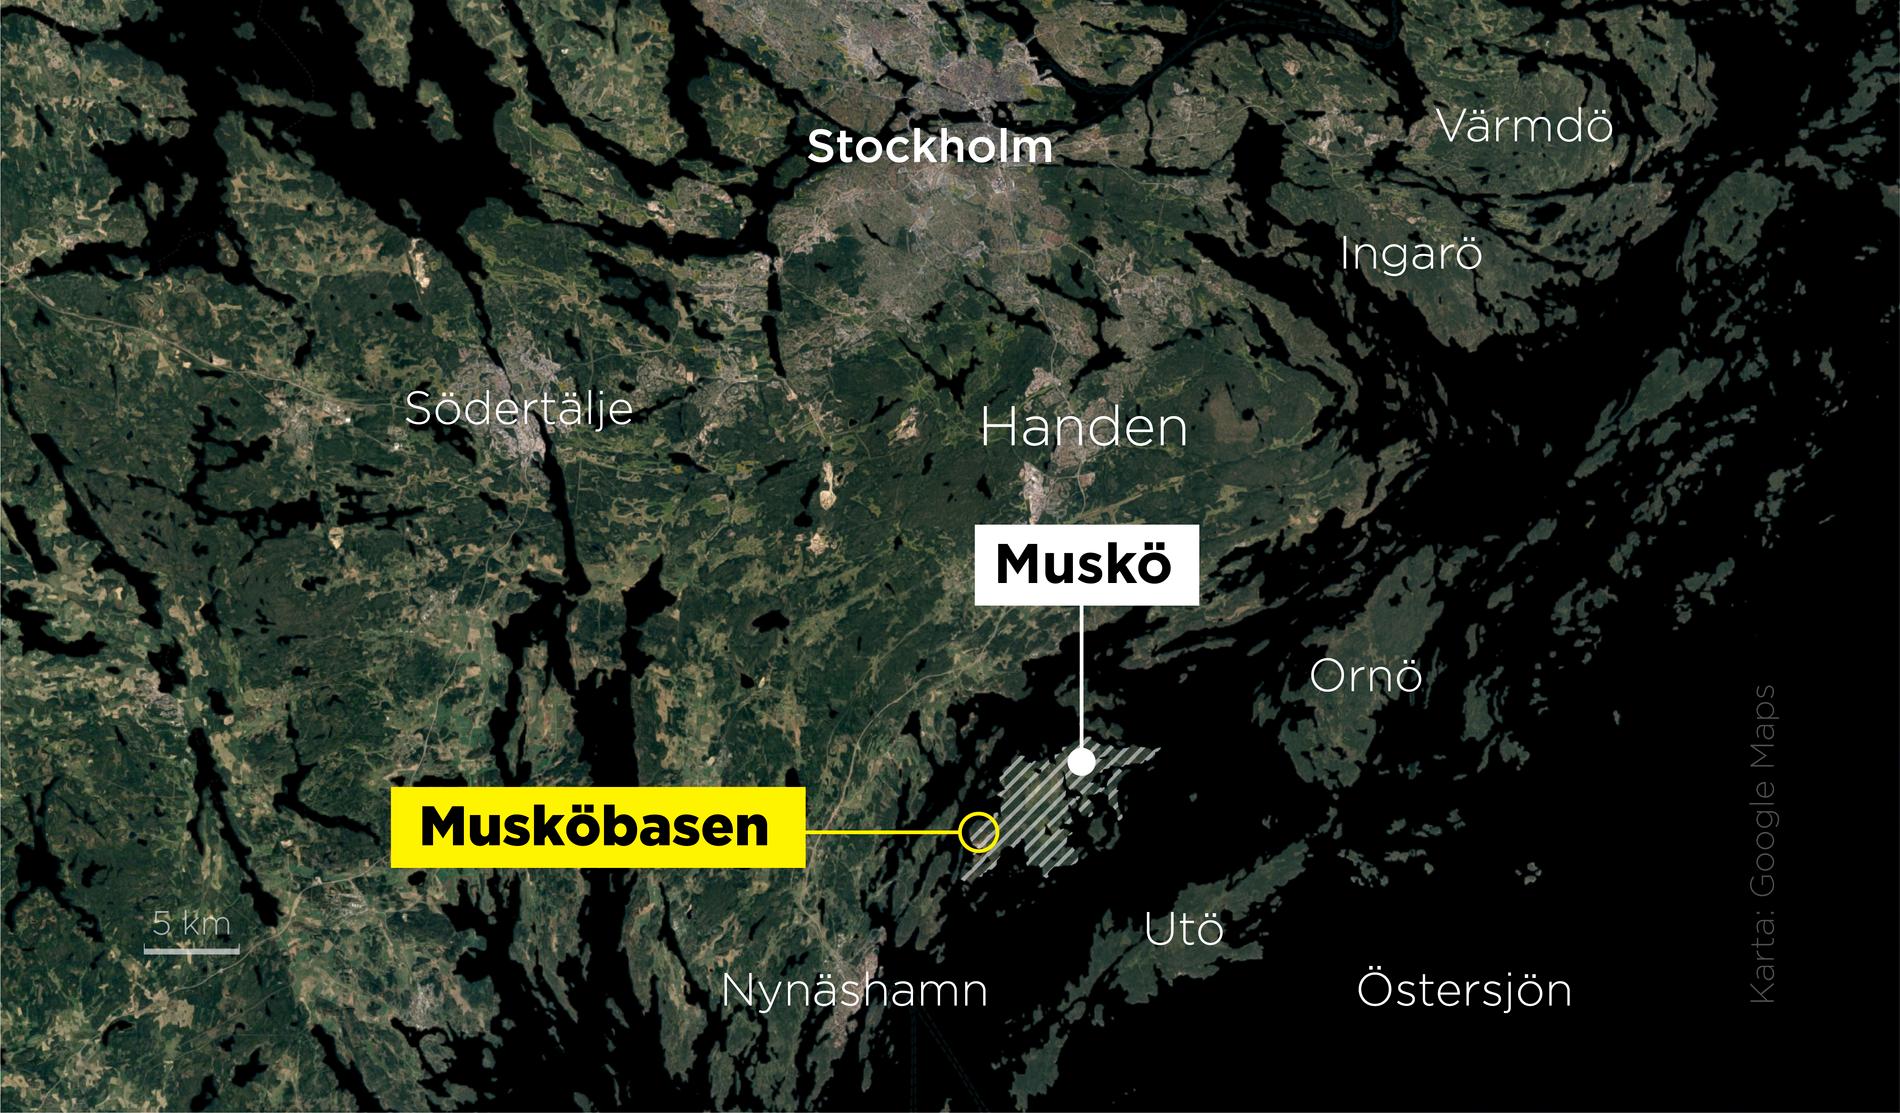 Muskö örlogsbas ligger i Haninge kommun söder om Stockholm och invigdes den 30 september 1969.